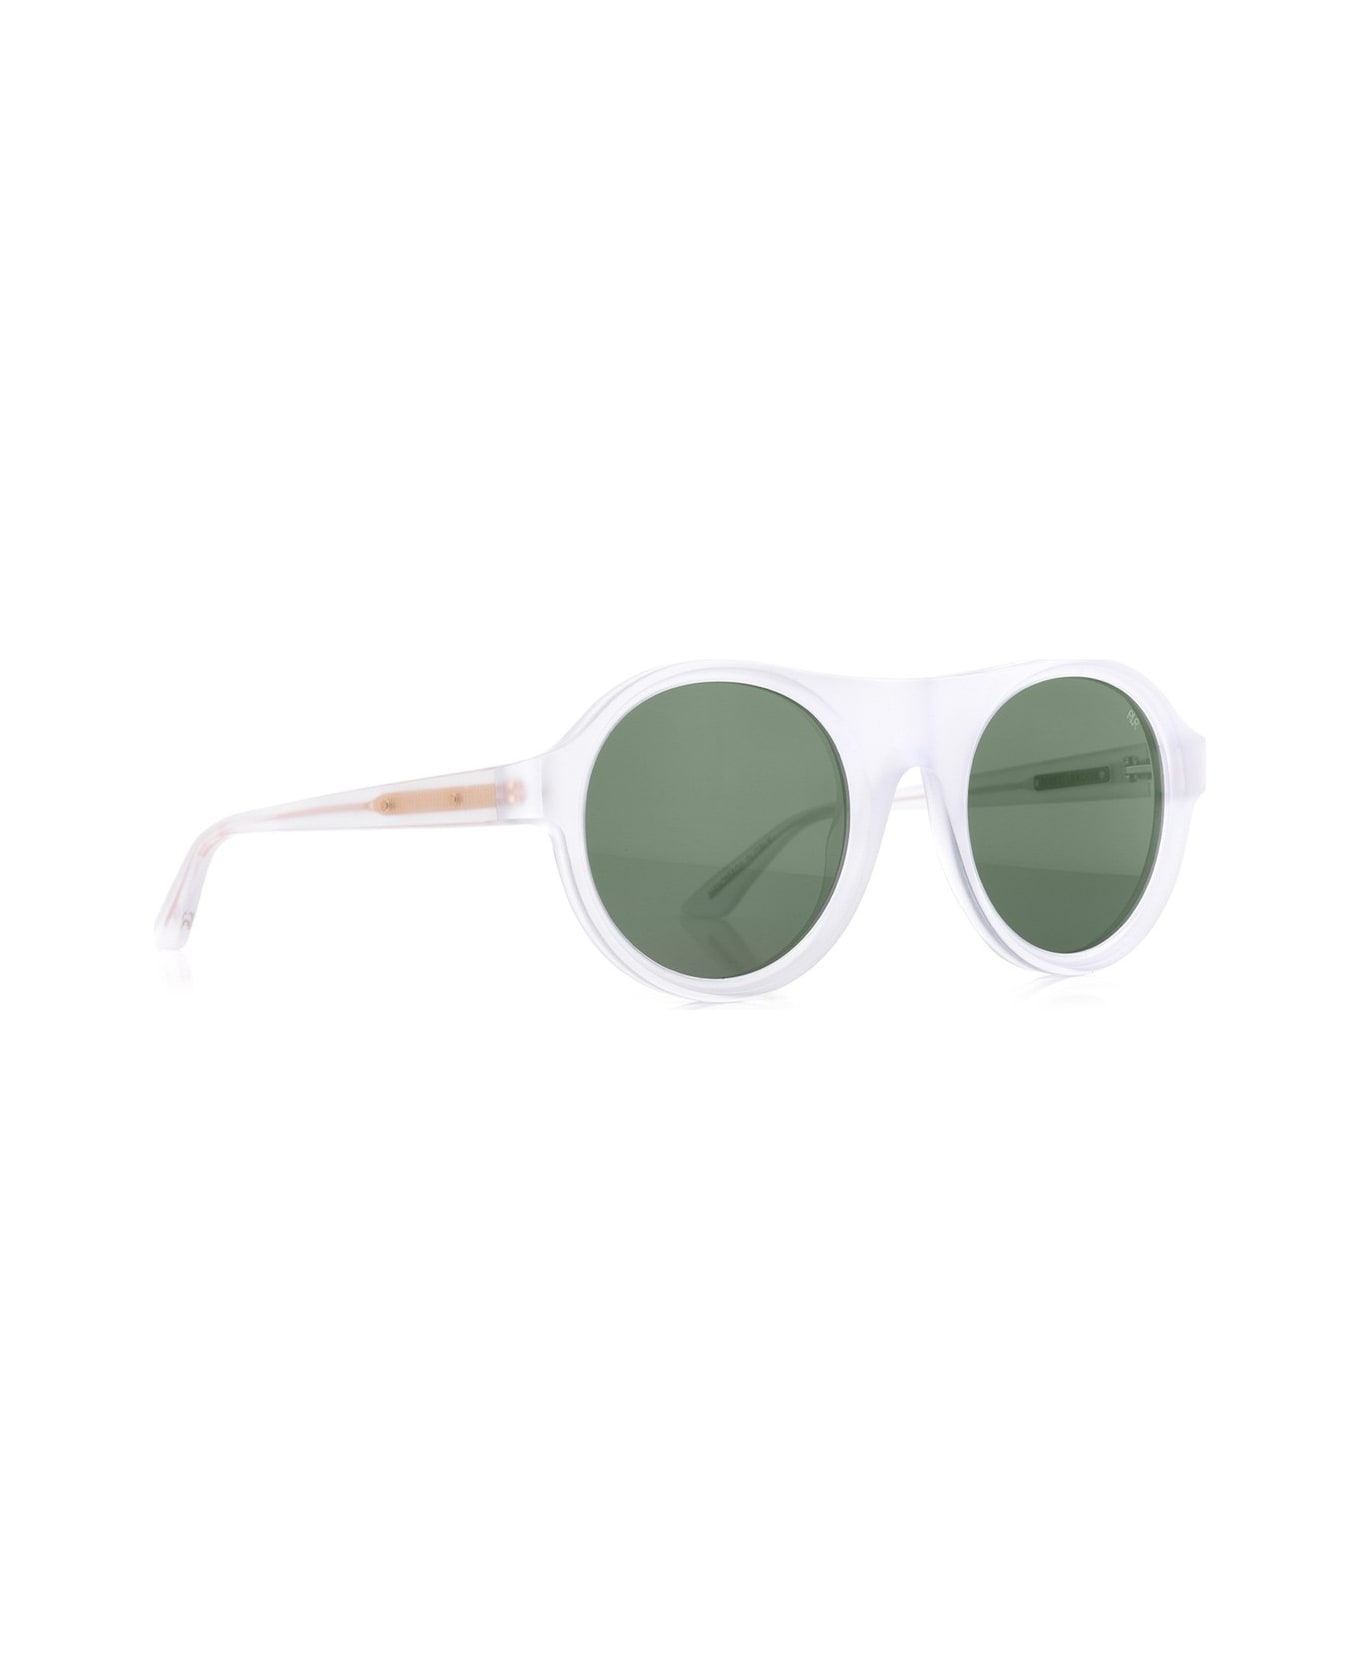 Robert La Roche Rlr S300 Sunglasses - Bianco